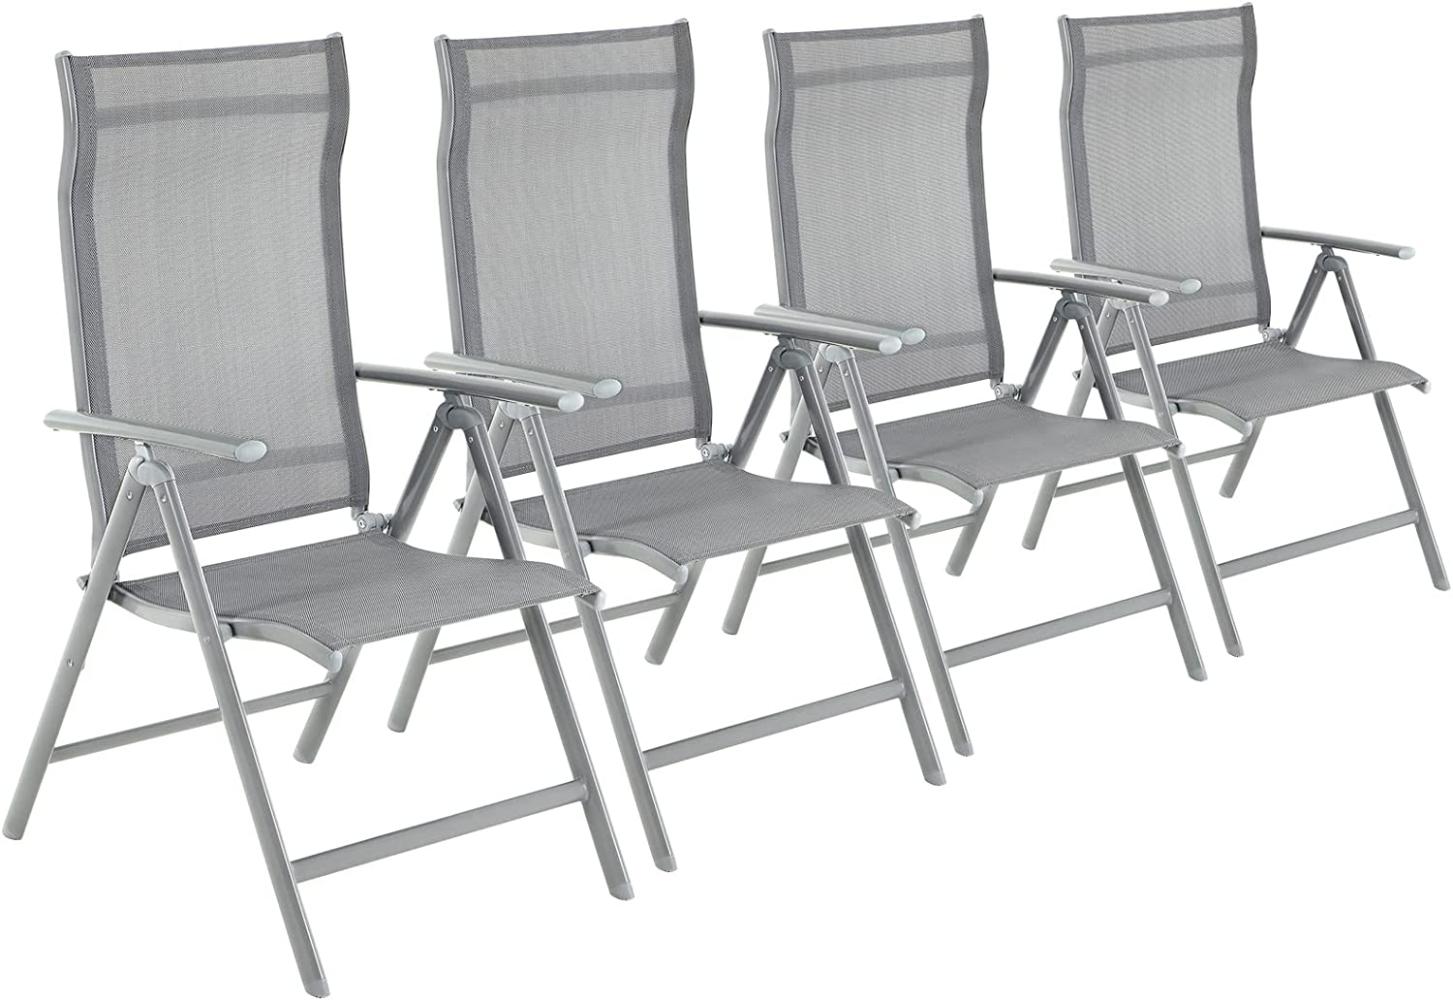 Gartenstühle, 4er Set, Klappstühle, Outdoor-Stühle mit robustem Aluminiumgestell, Rückenlehne 8-stufig verstellbar, bis 150 kg belastbar, grau GCB30GY Bild 1